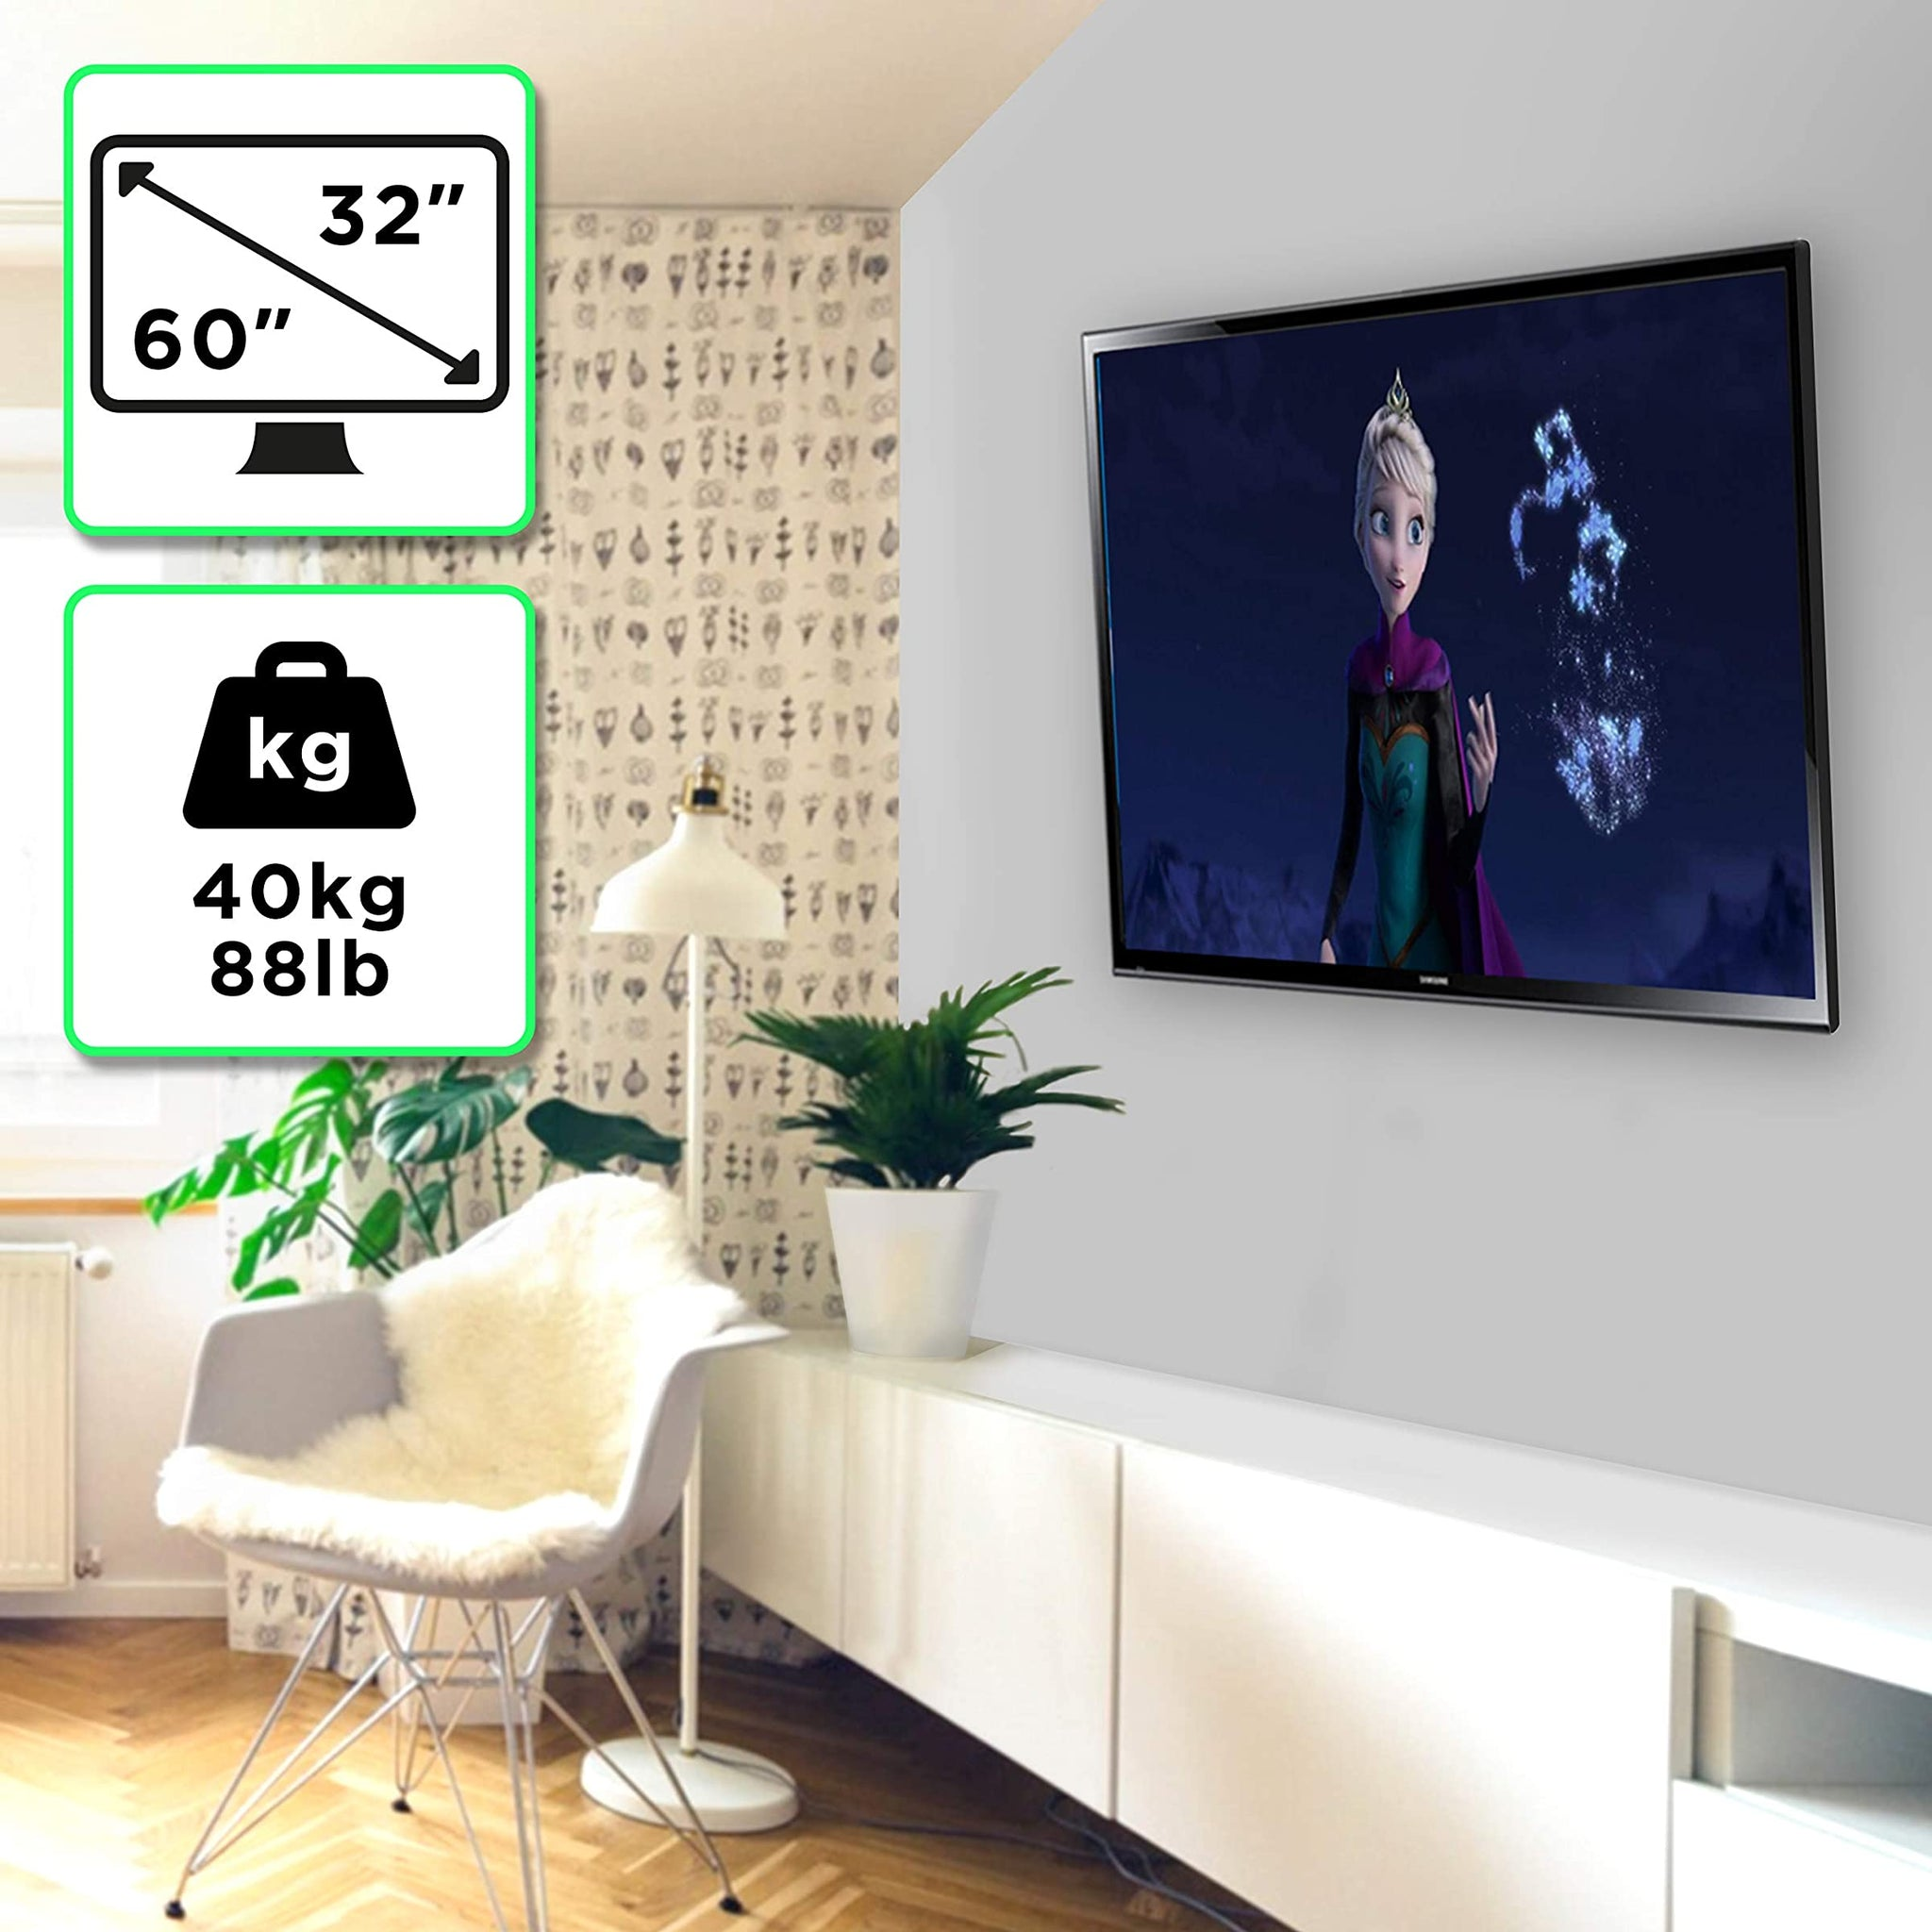 LCD Wandhalterung, Wandhalterung Halterung Fernseher TV Schwarz | | DURONIC Universale OLED Bis TVB123M Belastung 60\